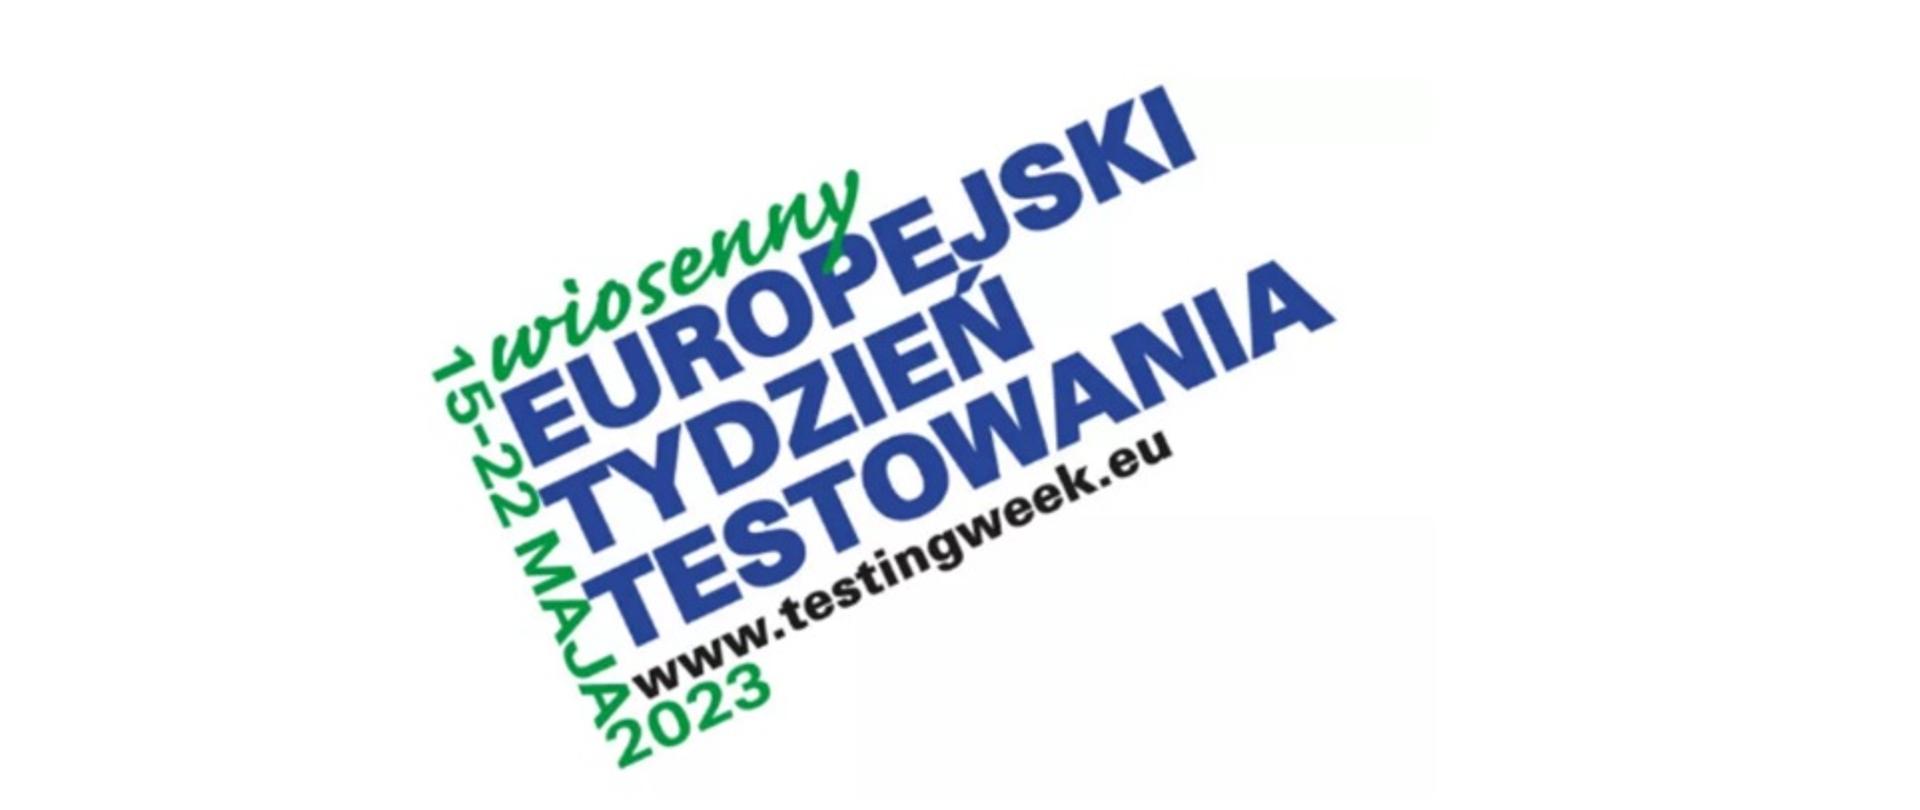 logo-napis pod ukosem - europejski tydzień szczepień i strona www.testingweek.eu